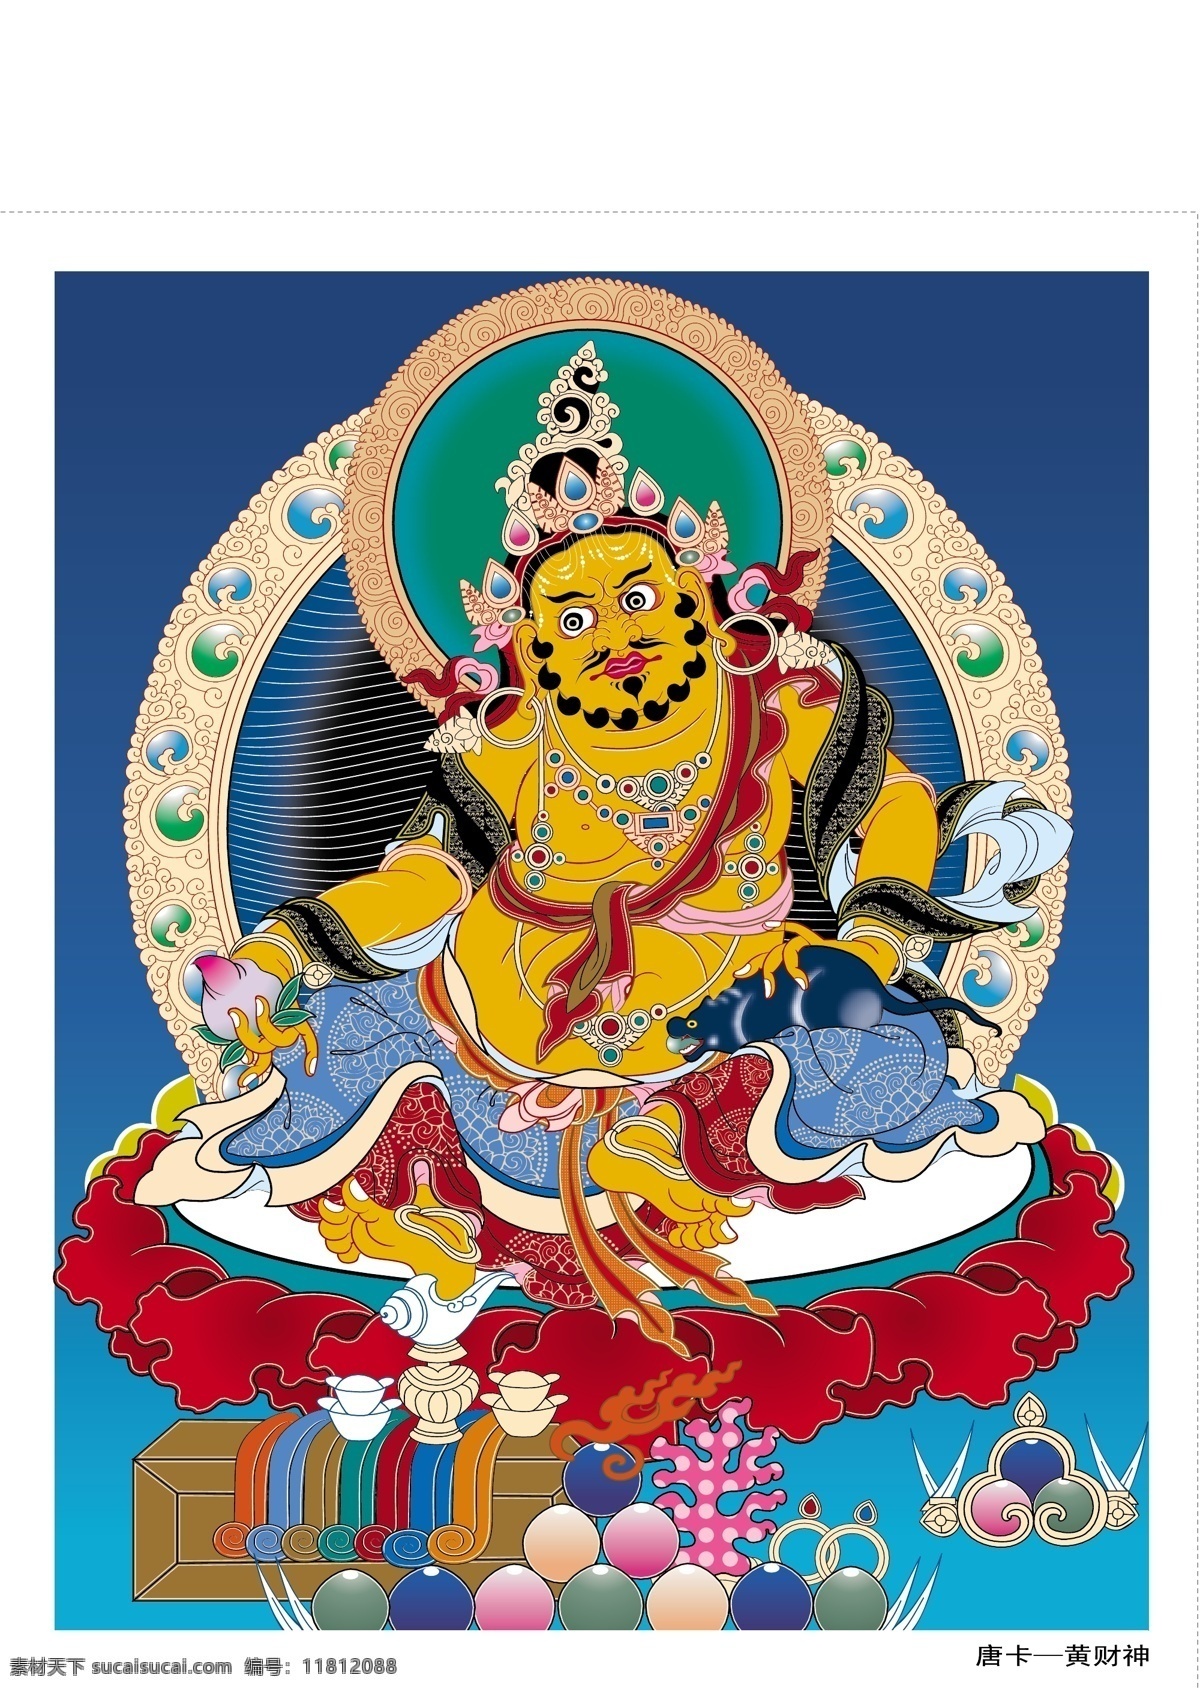 藏传佛教 唐卡 黄财神 唐卡08 文化艺术 宗教信仰 矢量图库